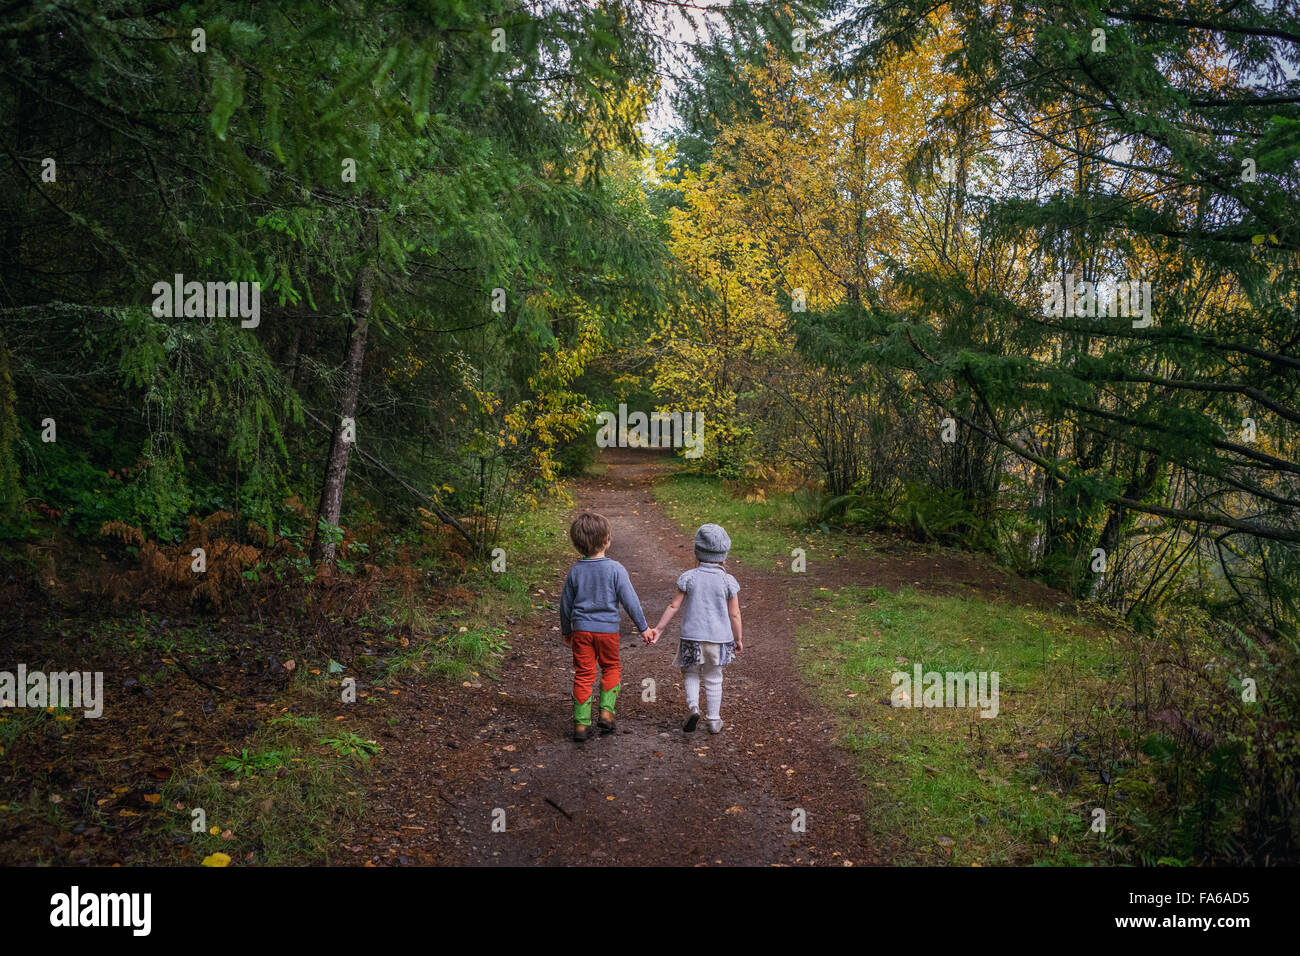 Vue arrière du garçon et fille qui marche à travers la forêt, se tenant la main Banque D'Images